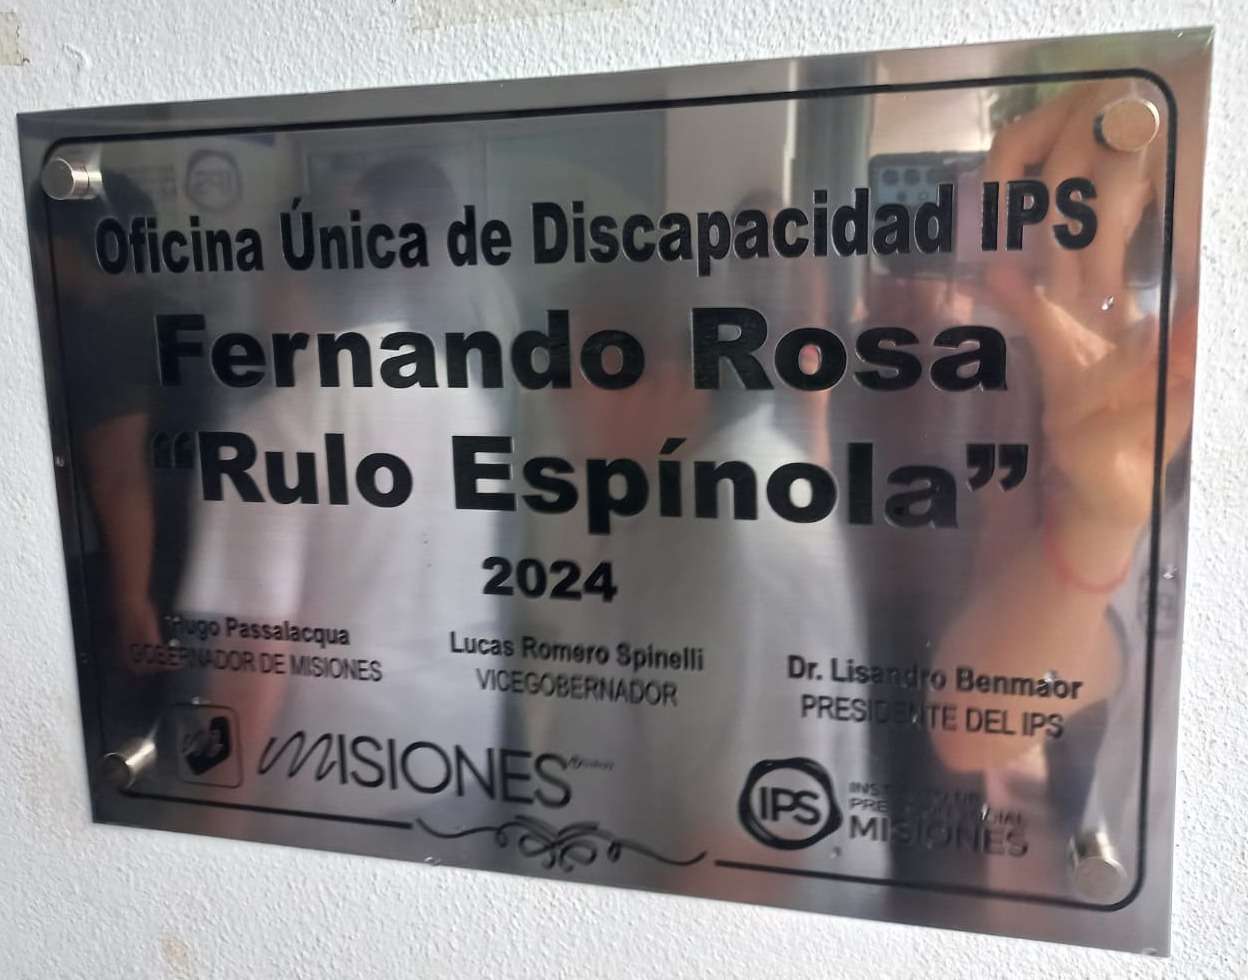 La Oficina Única de Discapacidad del IPS lleva el nombre del actor Fernando Rosa.